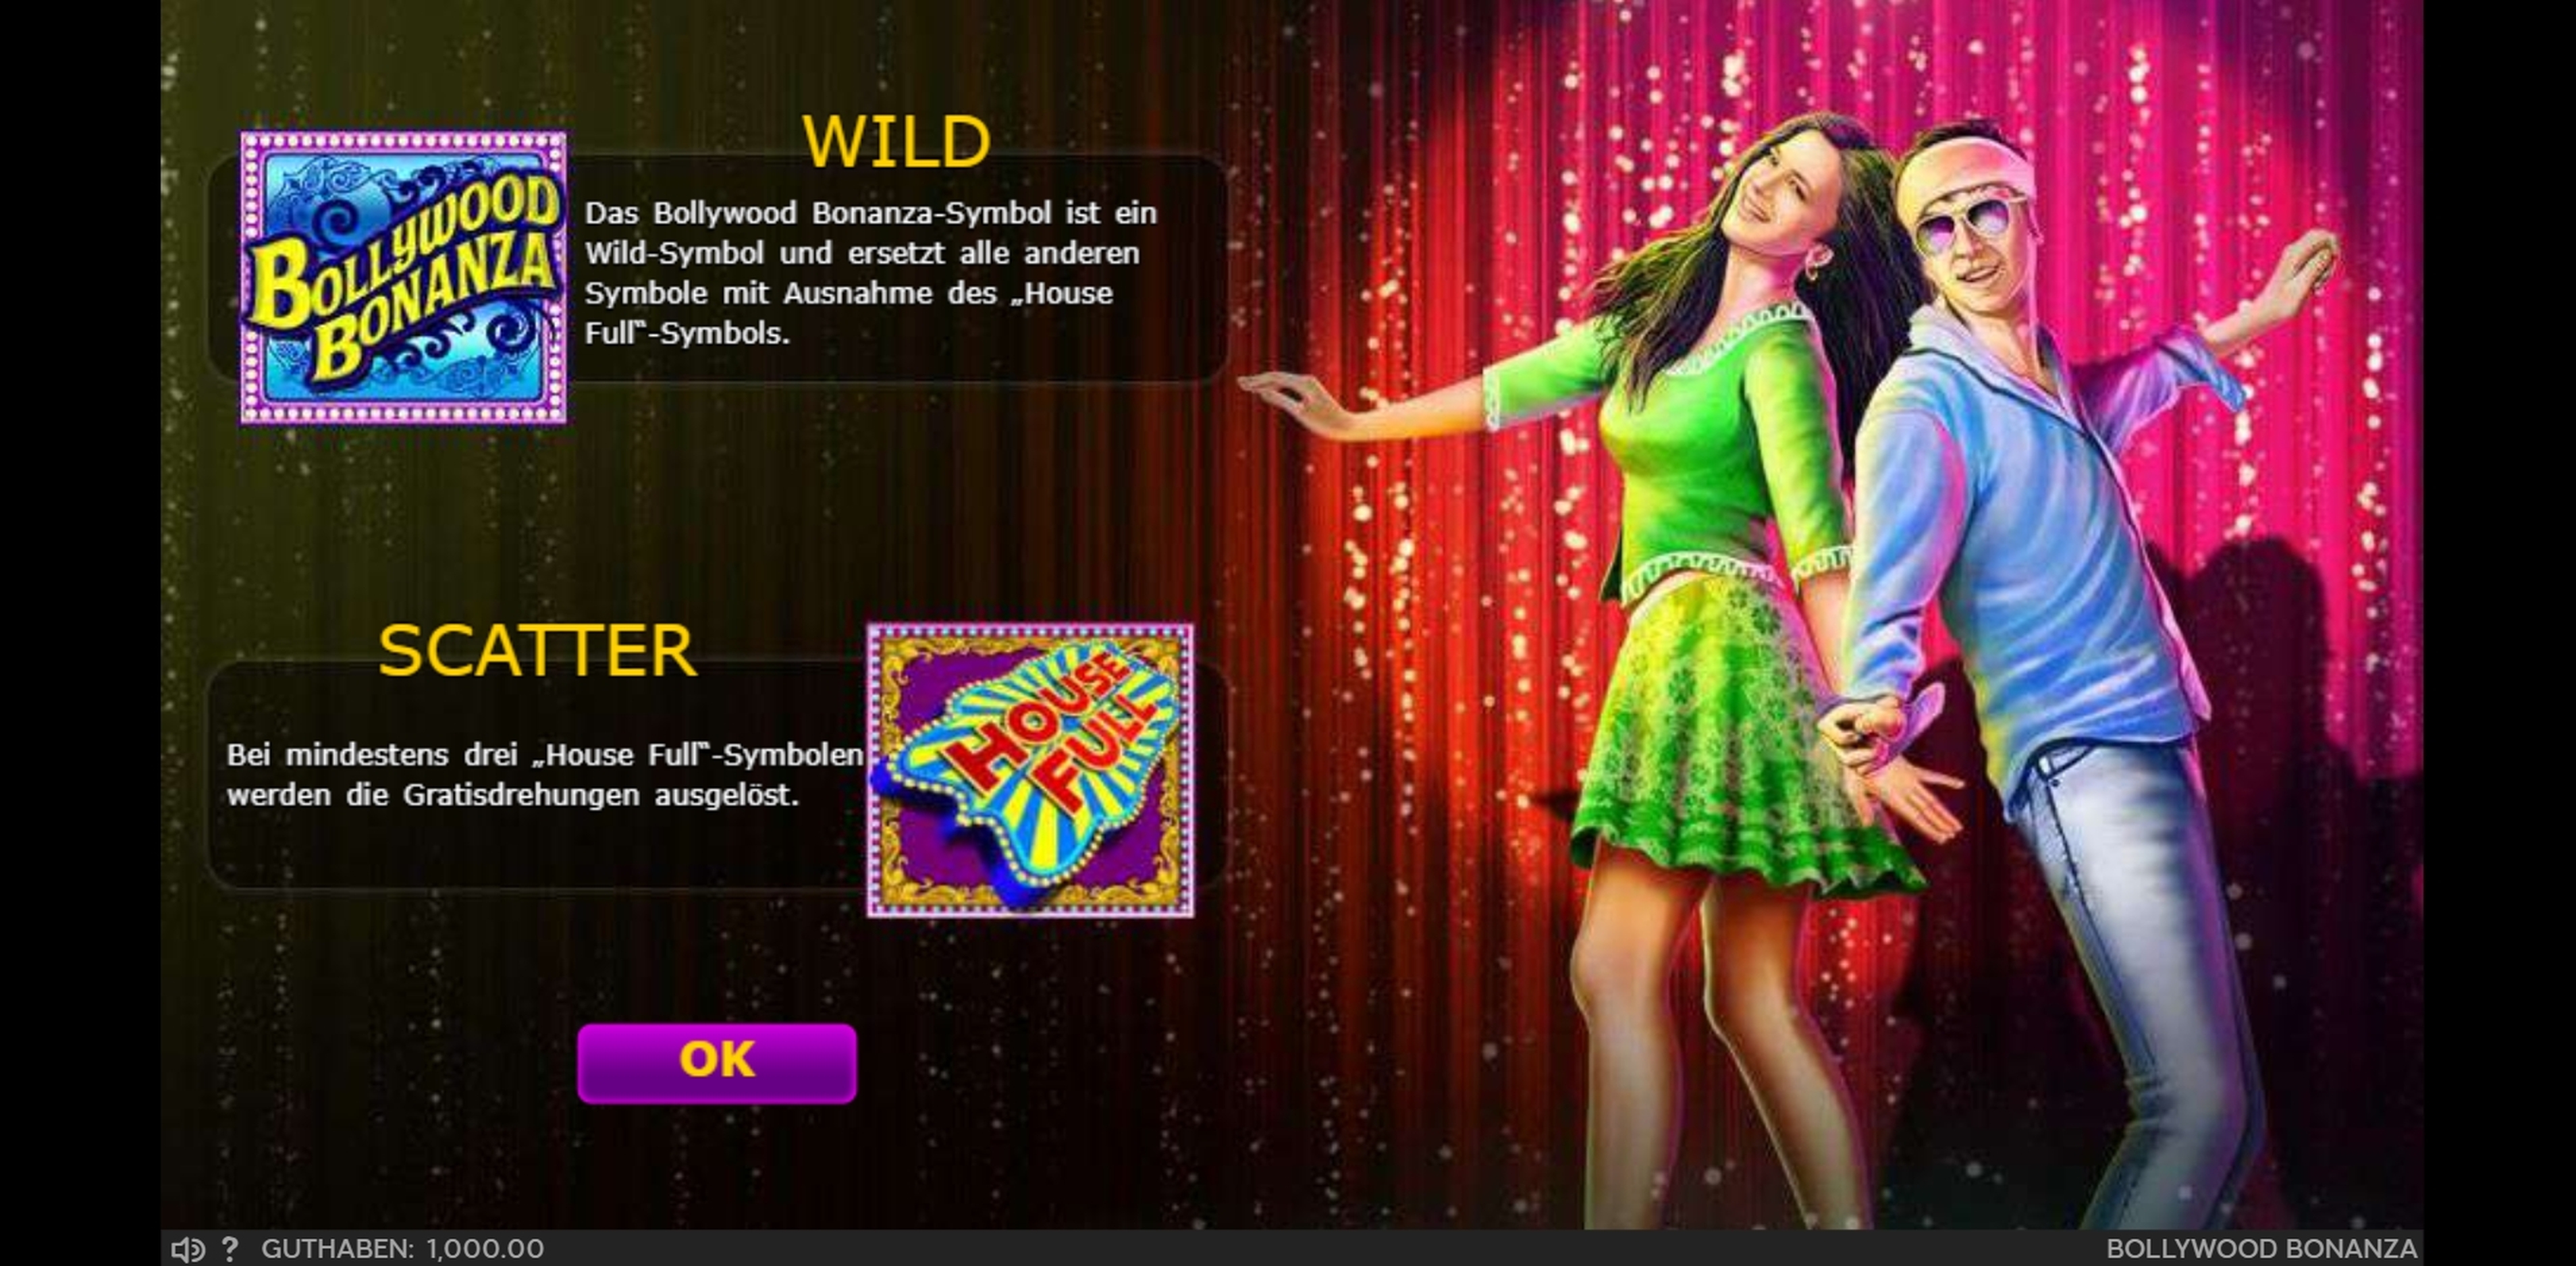 Play Bollywood Bonanza Free Casino Slot Game by 888 Gaming